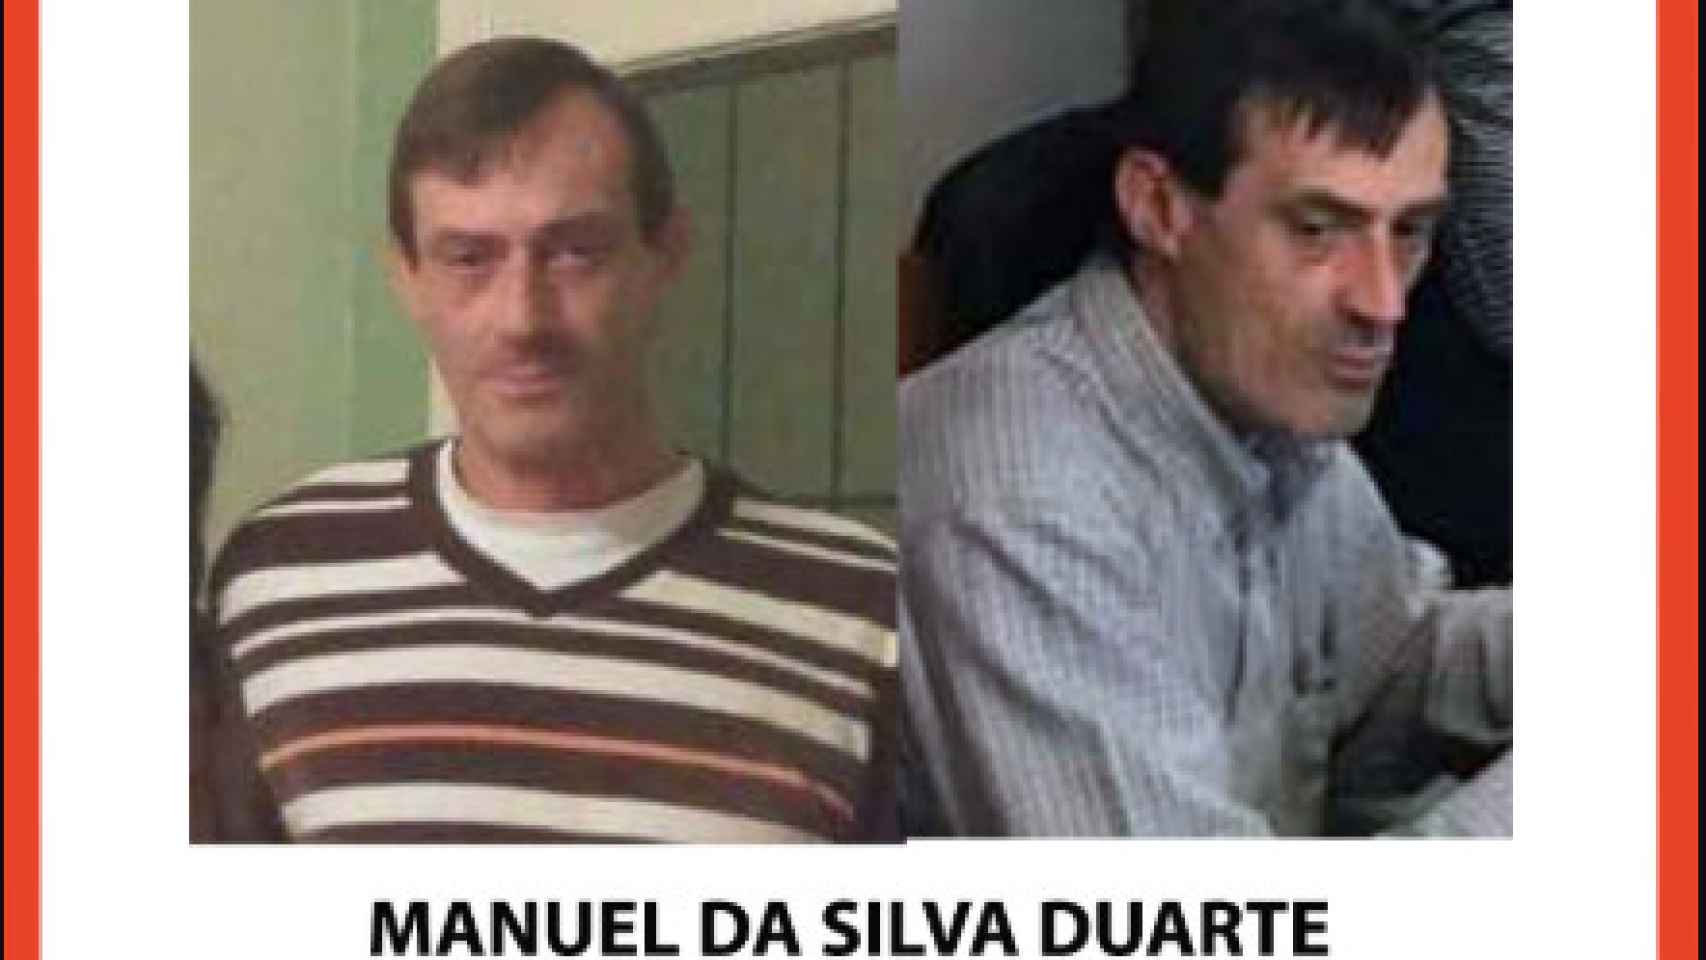 Cartel notificando la desaparición de Manuel Da Silva Duarte.